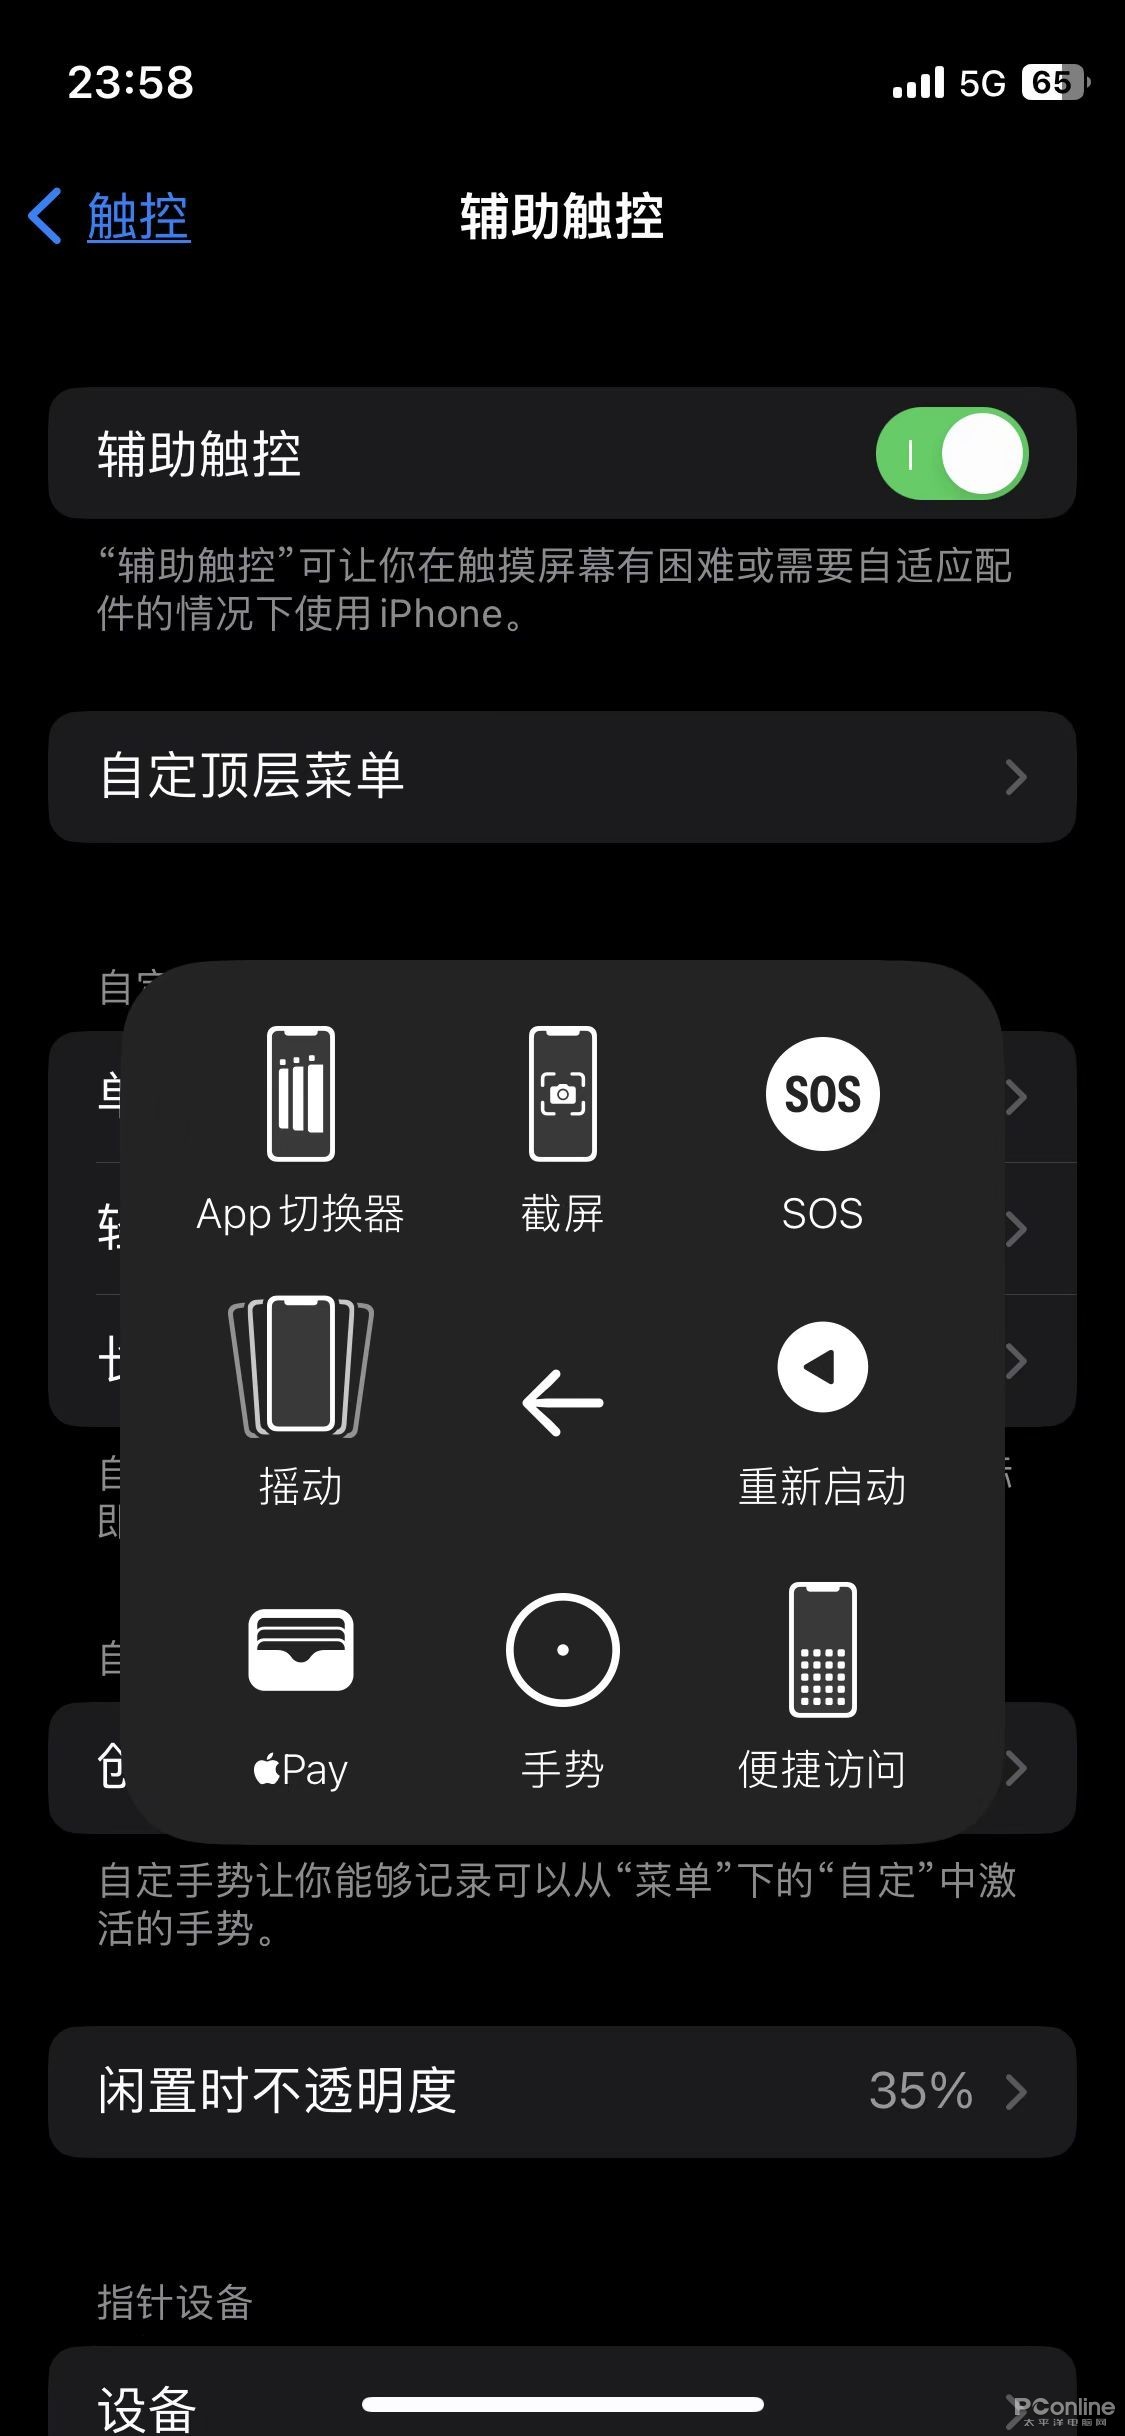  iphone14截屏设置方法